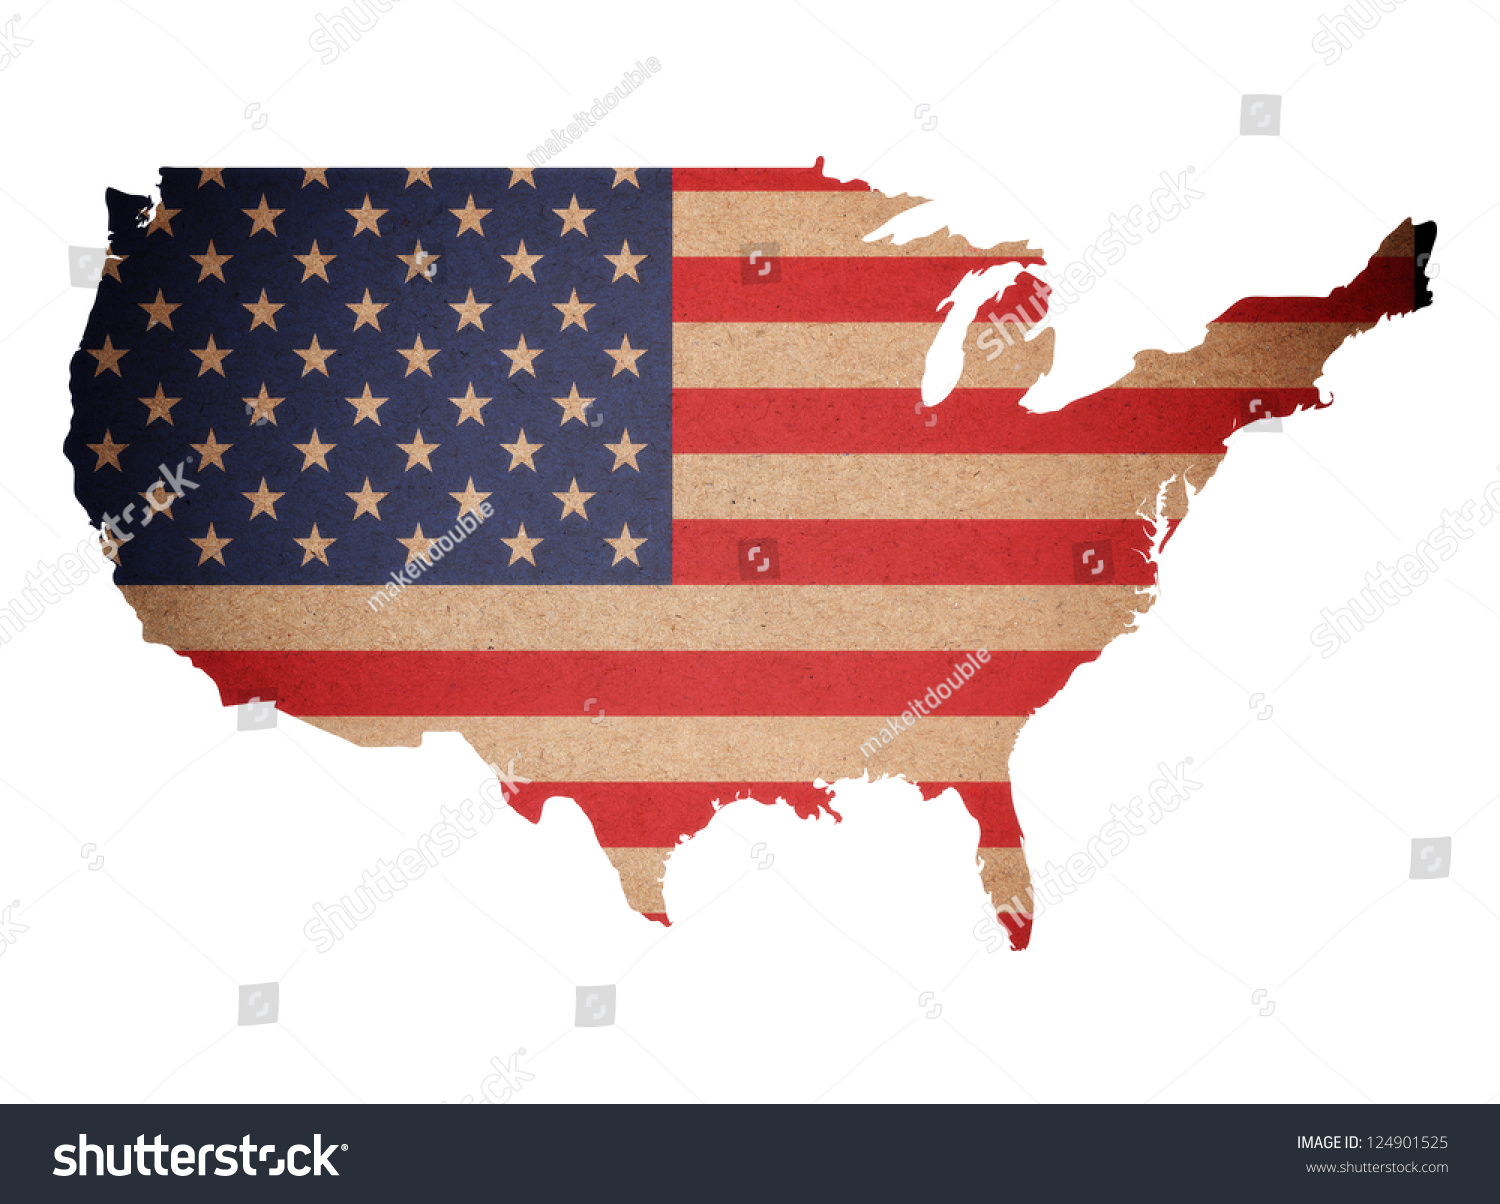 Essay on united states of america